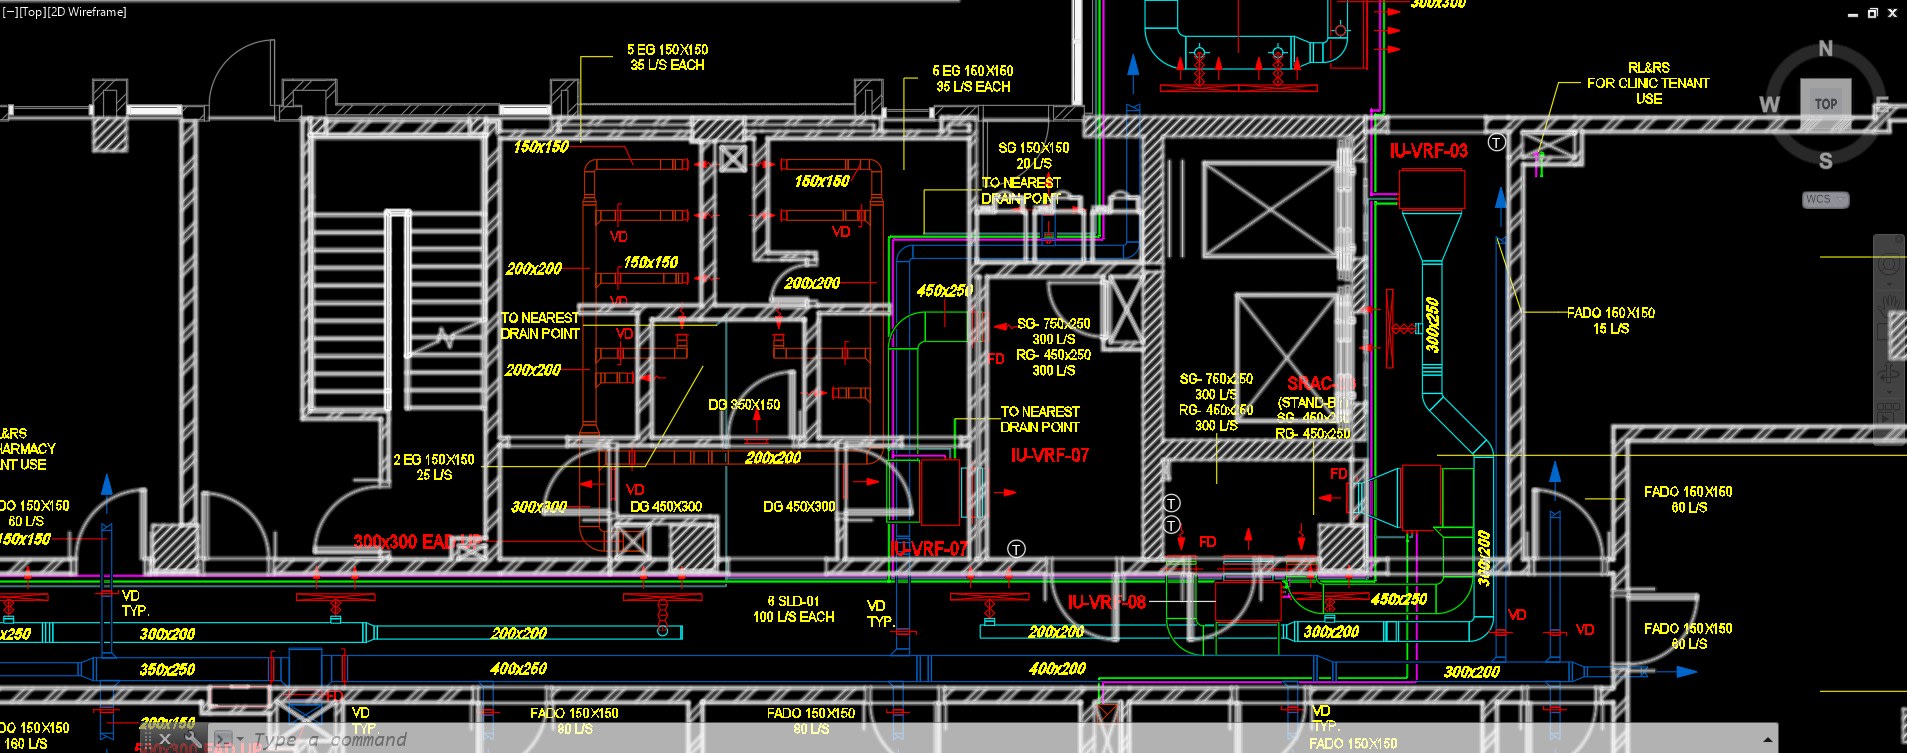 Với Design hvac system in autocad, bạn sẽ có trải nghiệm tuyệt vời về thiết kế HVAC trong môi trường Autocad. Cảm nhận được sự tiện lợi và chính xác từ những nét vẽ đơn giản trên màn hình máy tính và tận hưởng sự thông minh của công nghệ CAD.